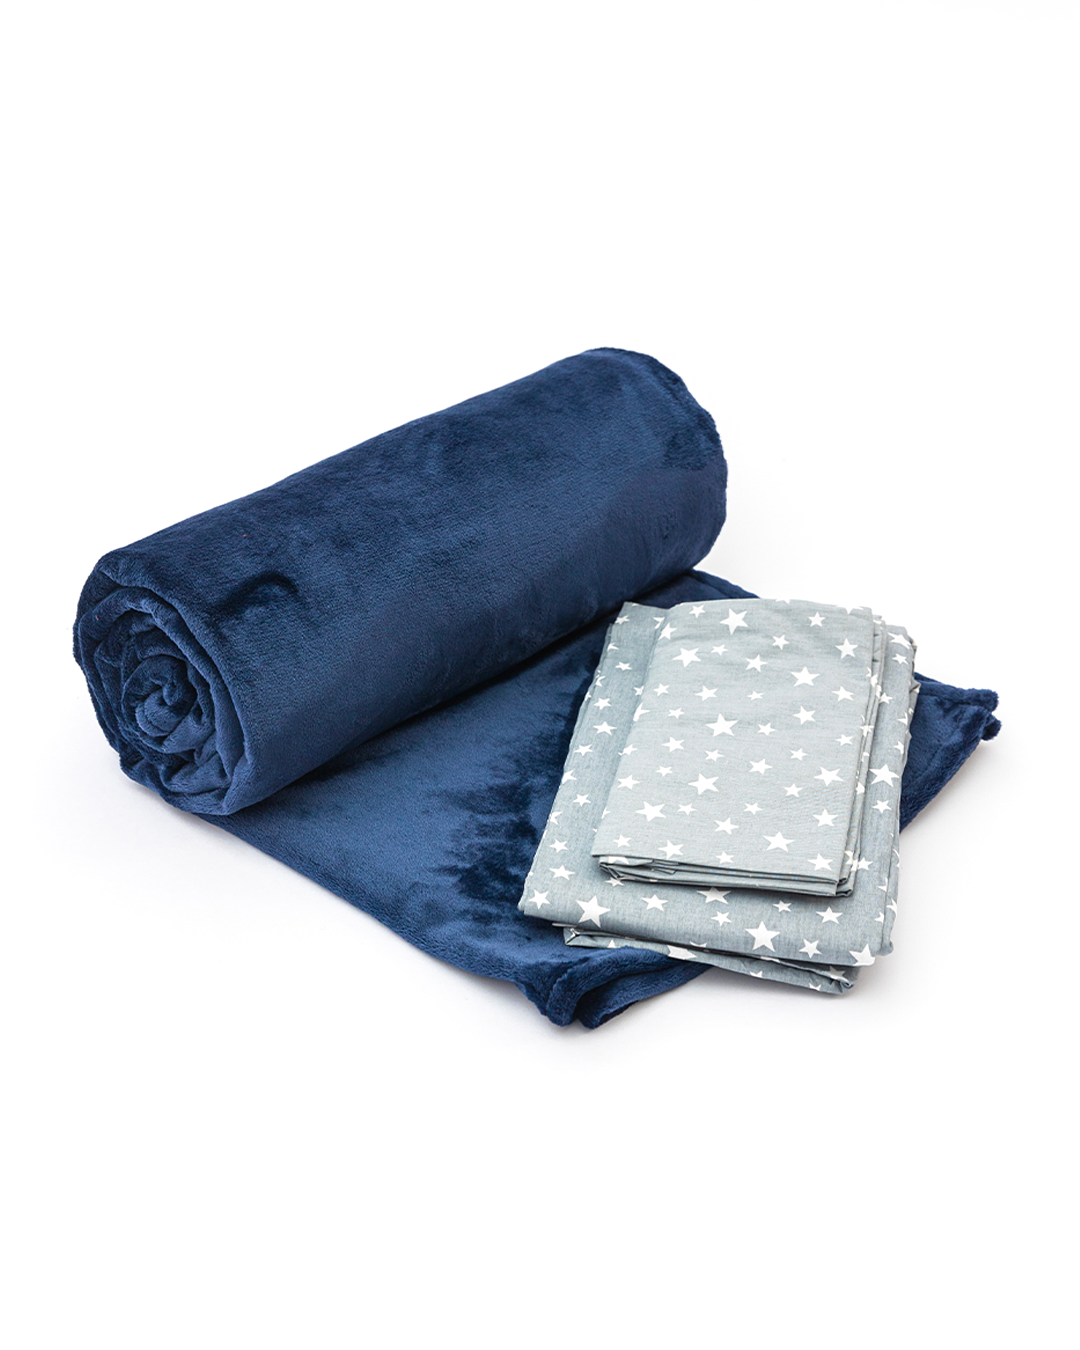 Twinkle Bedsheet + Fleece Blanket